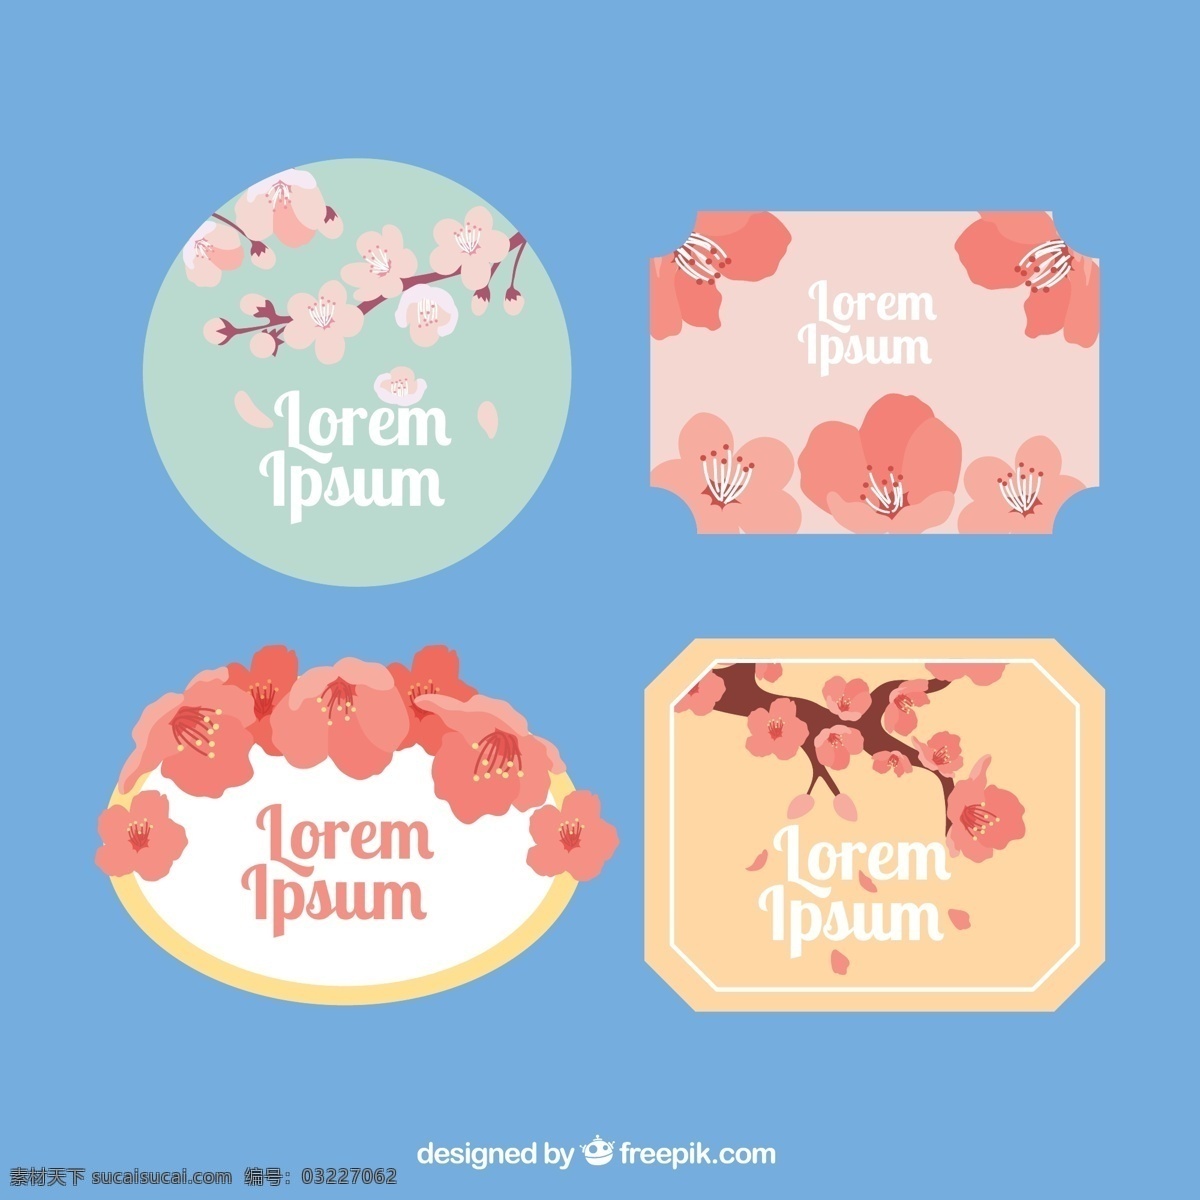 日本 古典 花卉 徽章 日本花卉徽章 古典花卉徽章 花卉徽章